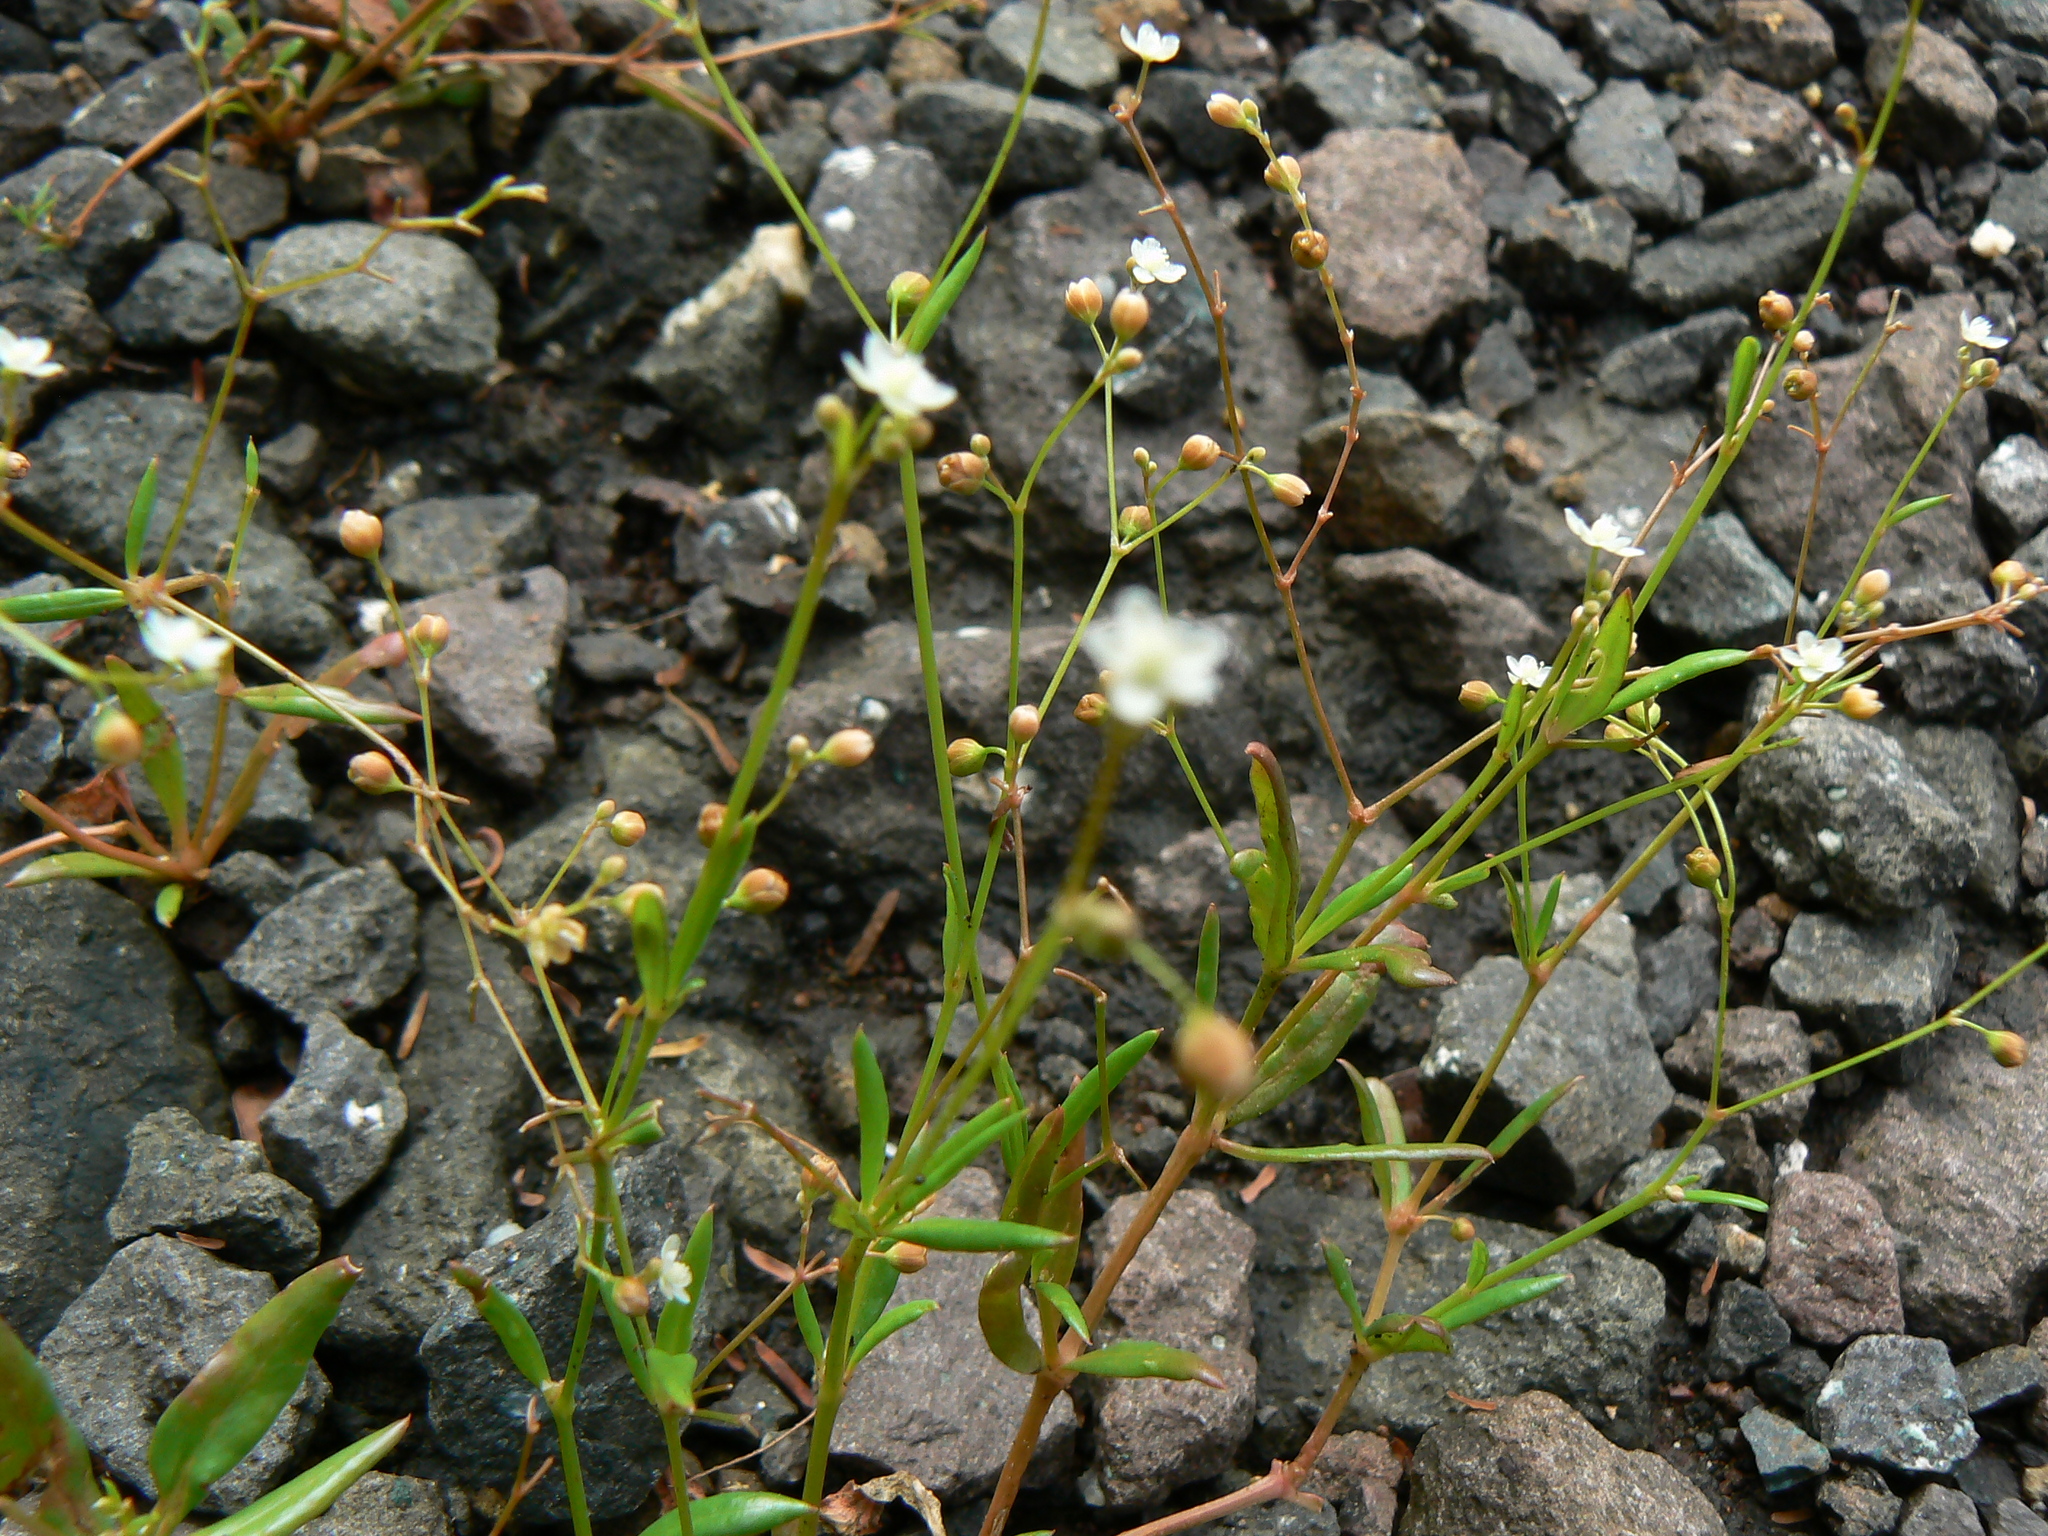 Trigastrotheca pentaphylla (L.) Thulin